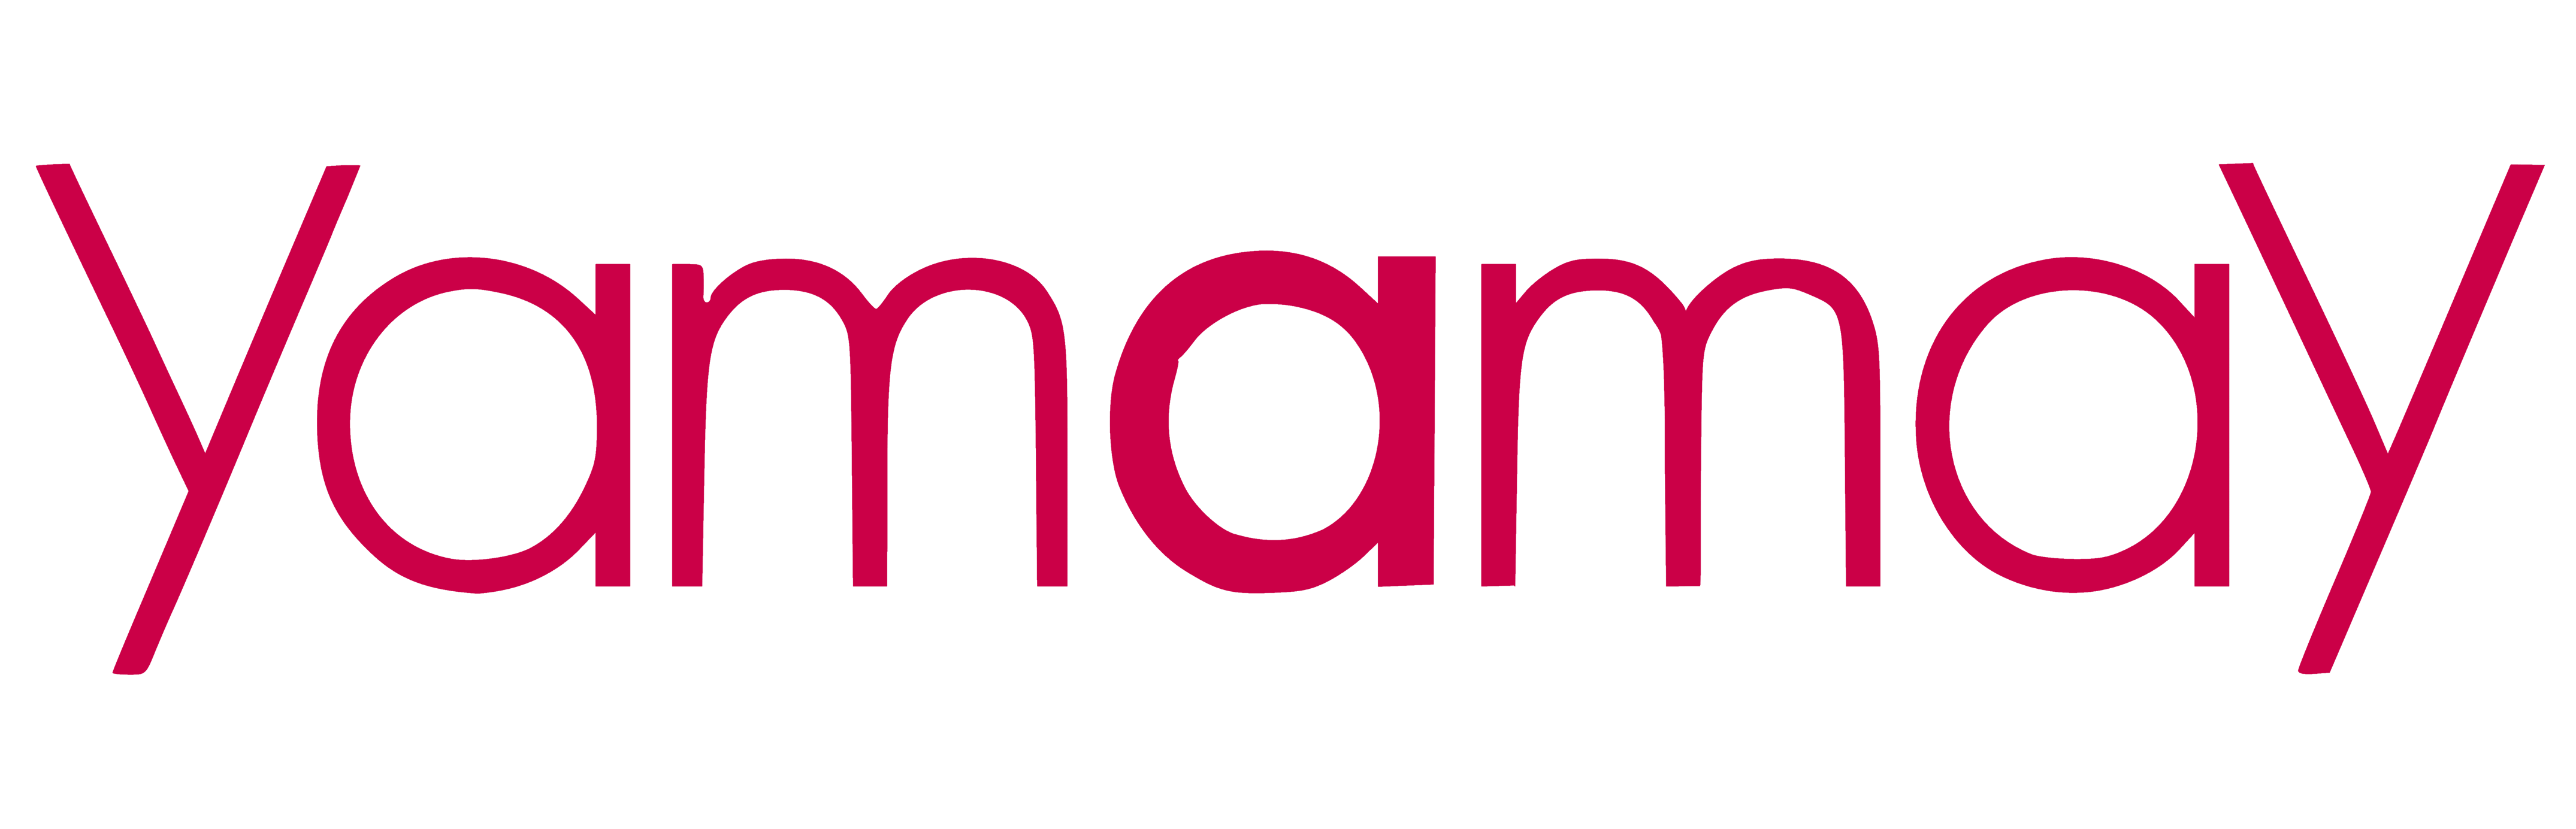 Yamamay logo, logotype